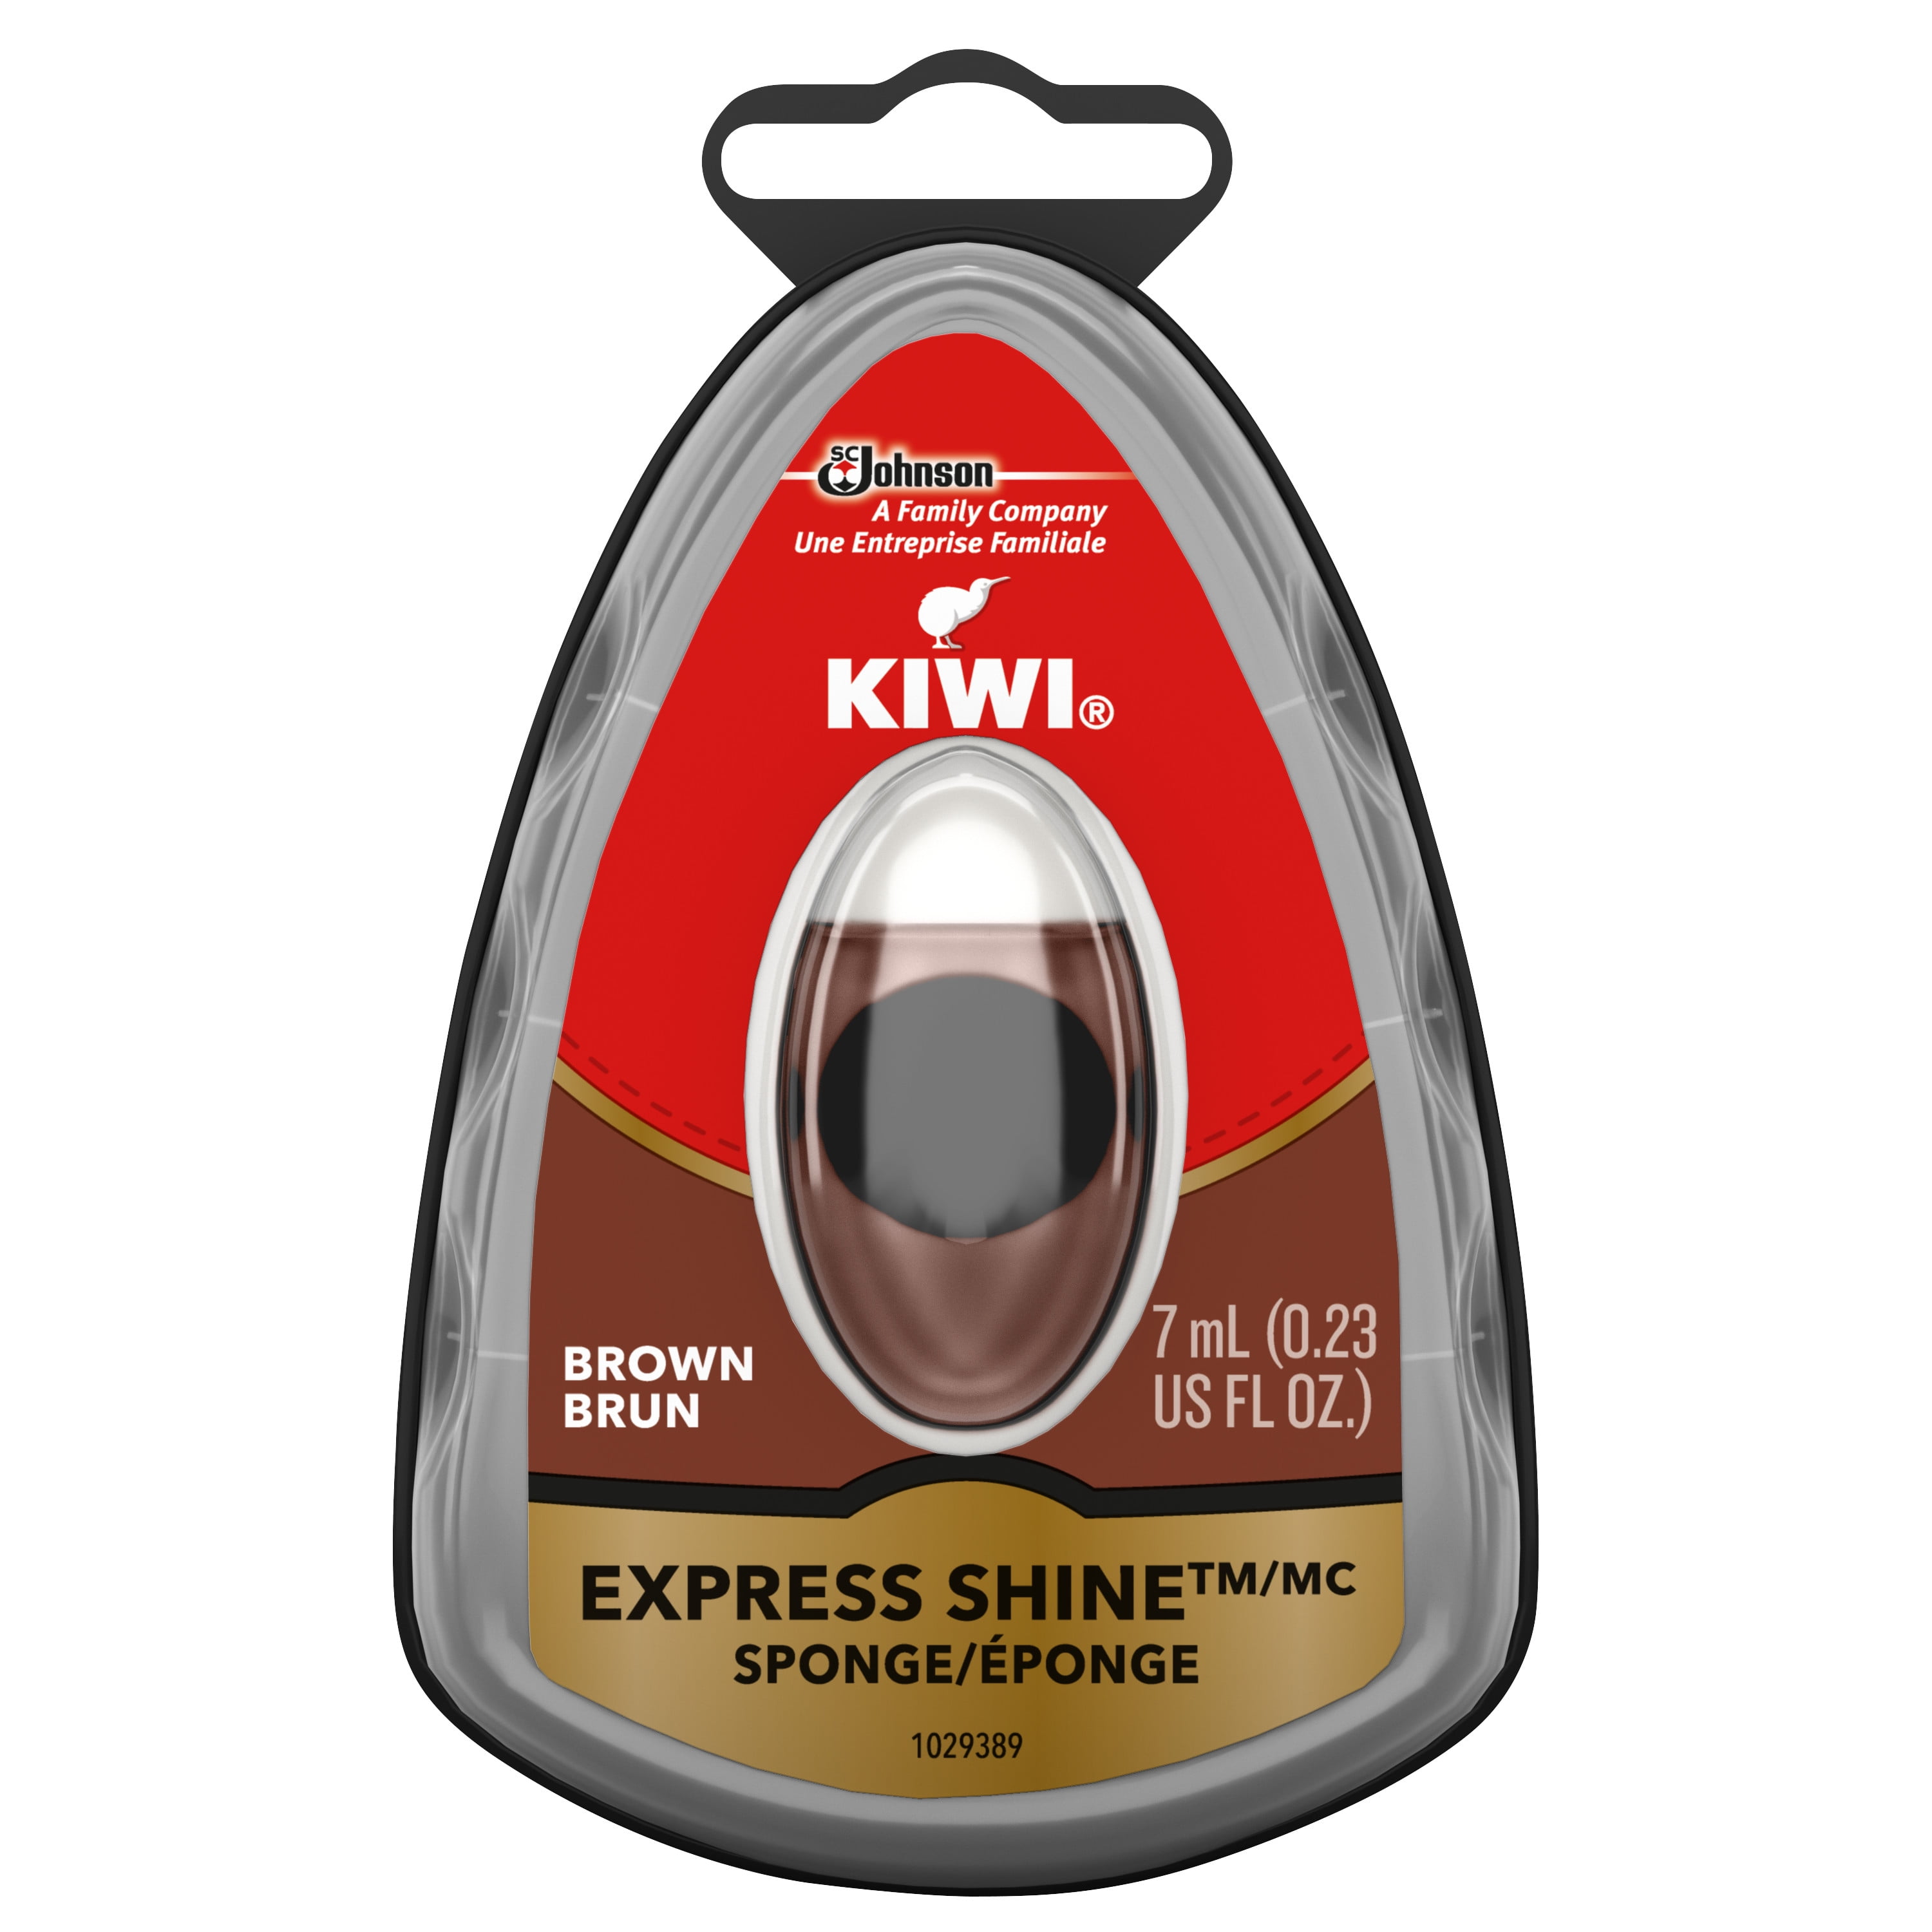 kiwi express shine ingredients